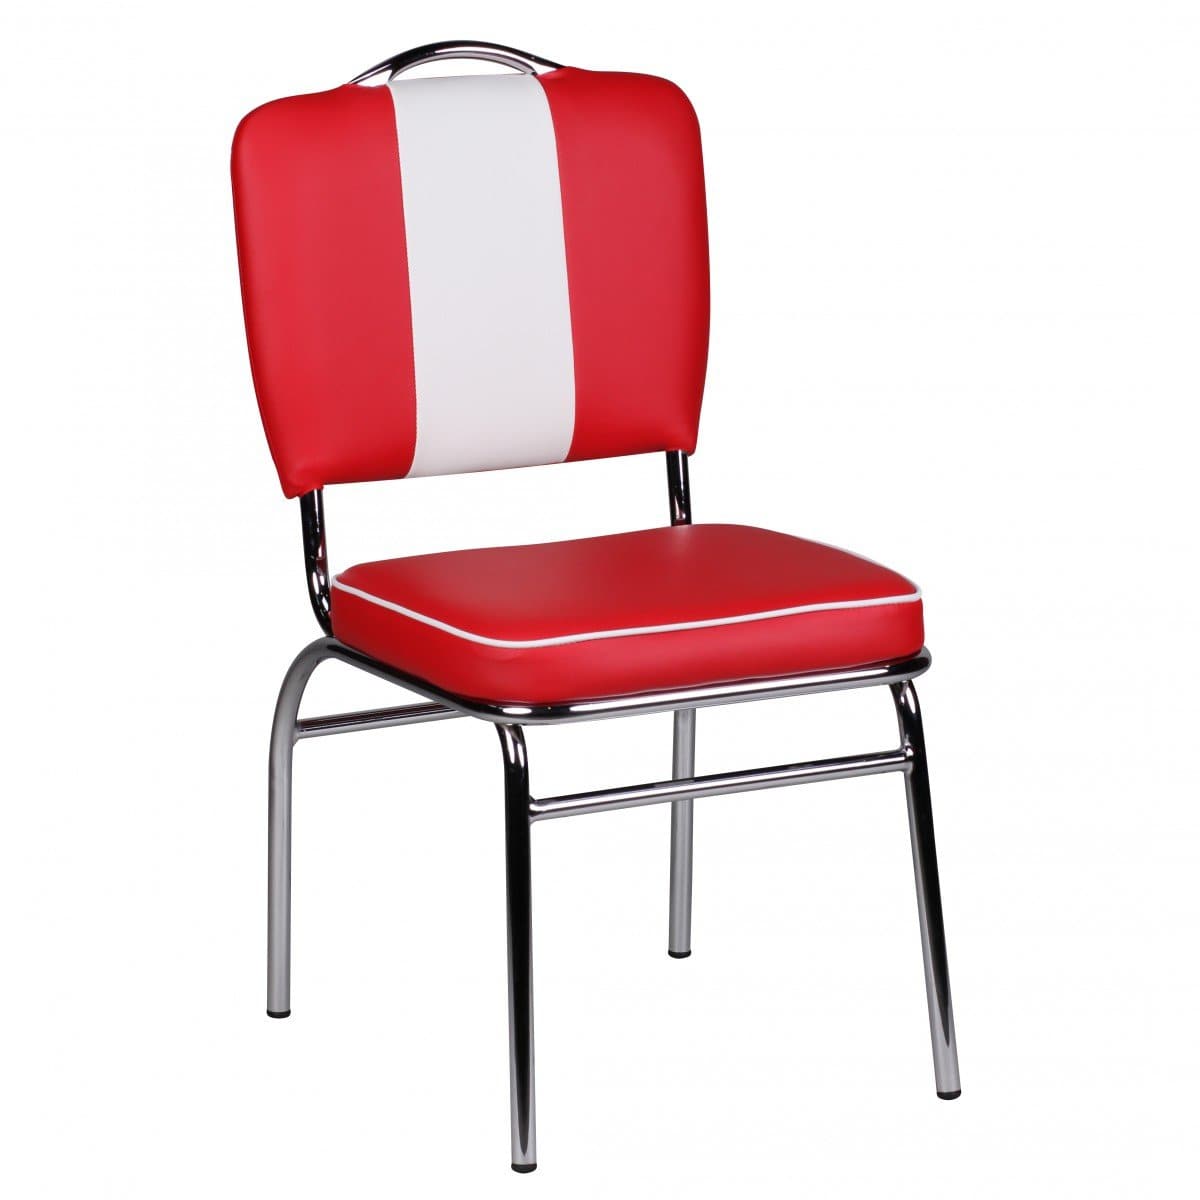 Chaise de salle à manger rétro de Nancy - Chaise de salle à manger - Chaise de salle à manger - Chaise - Chaises